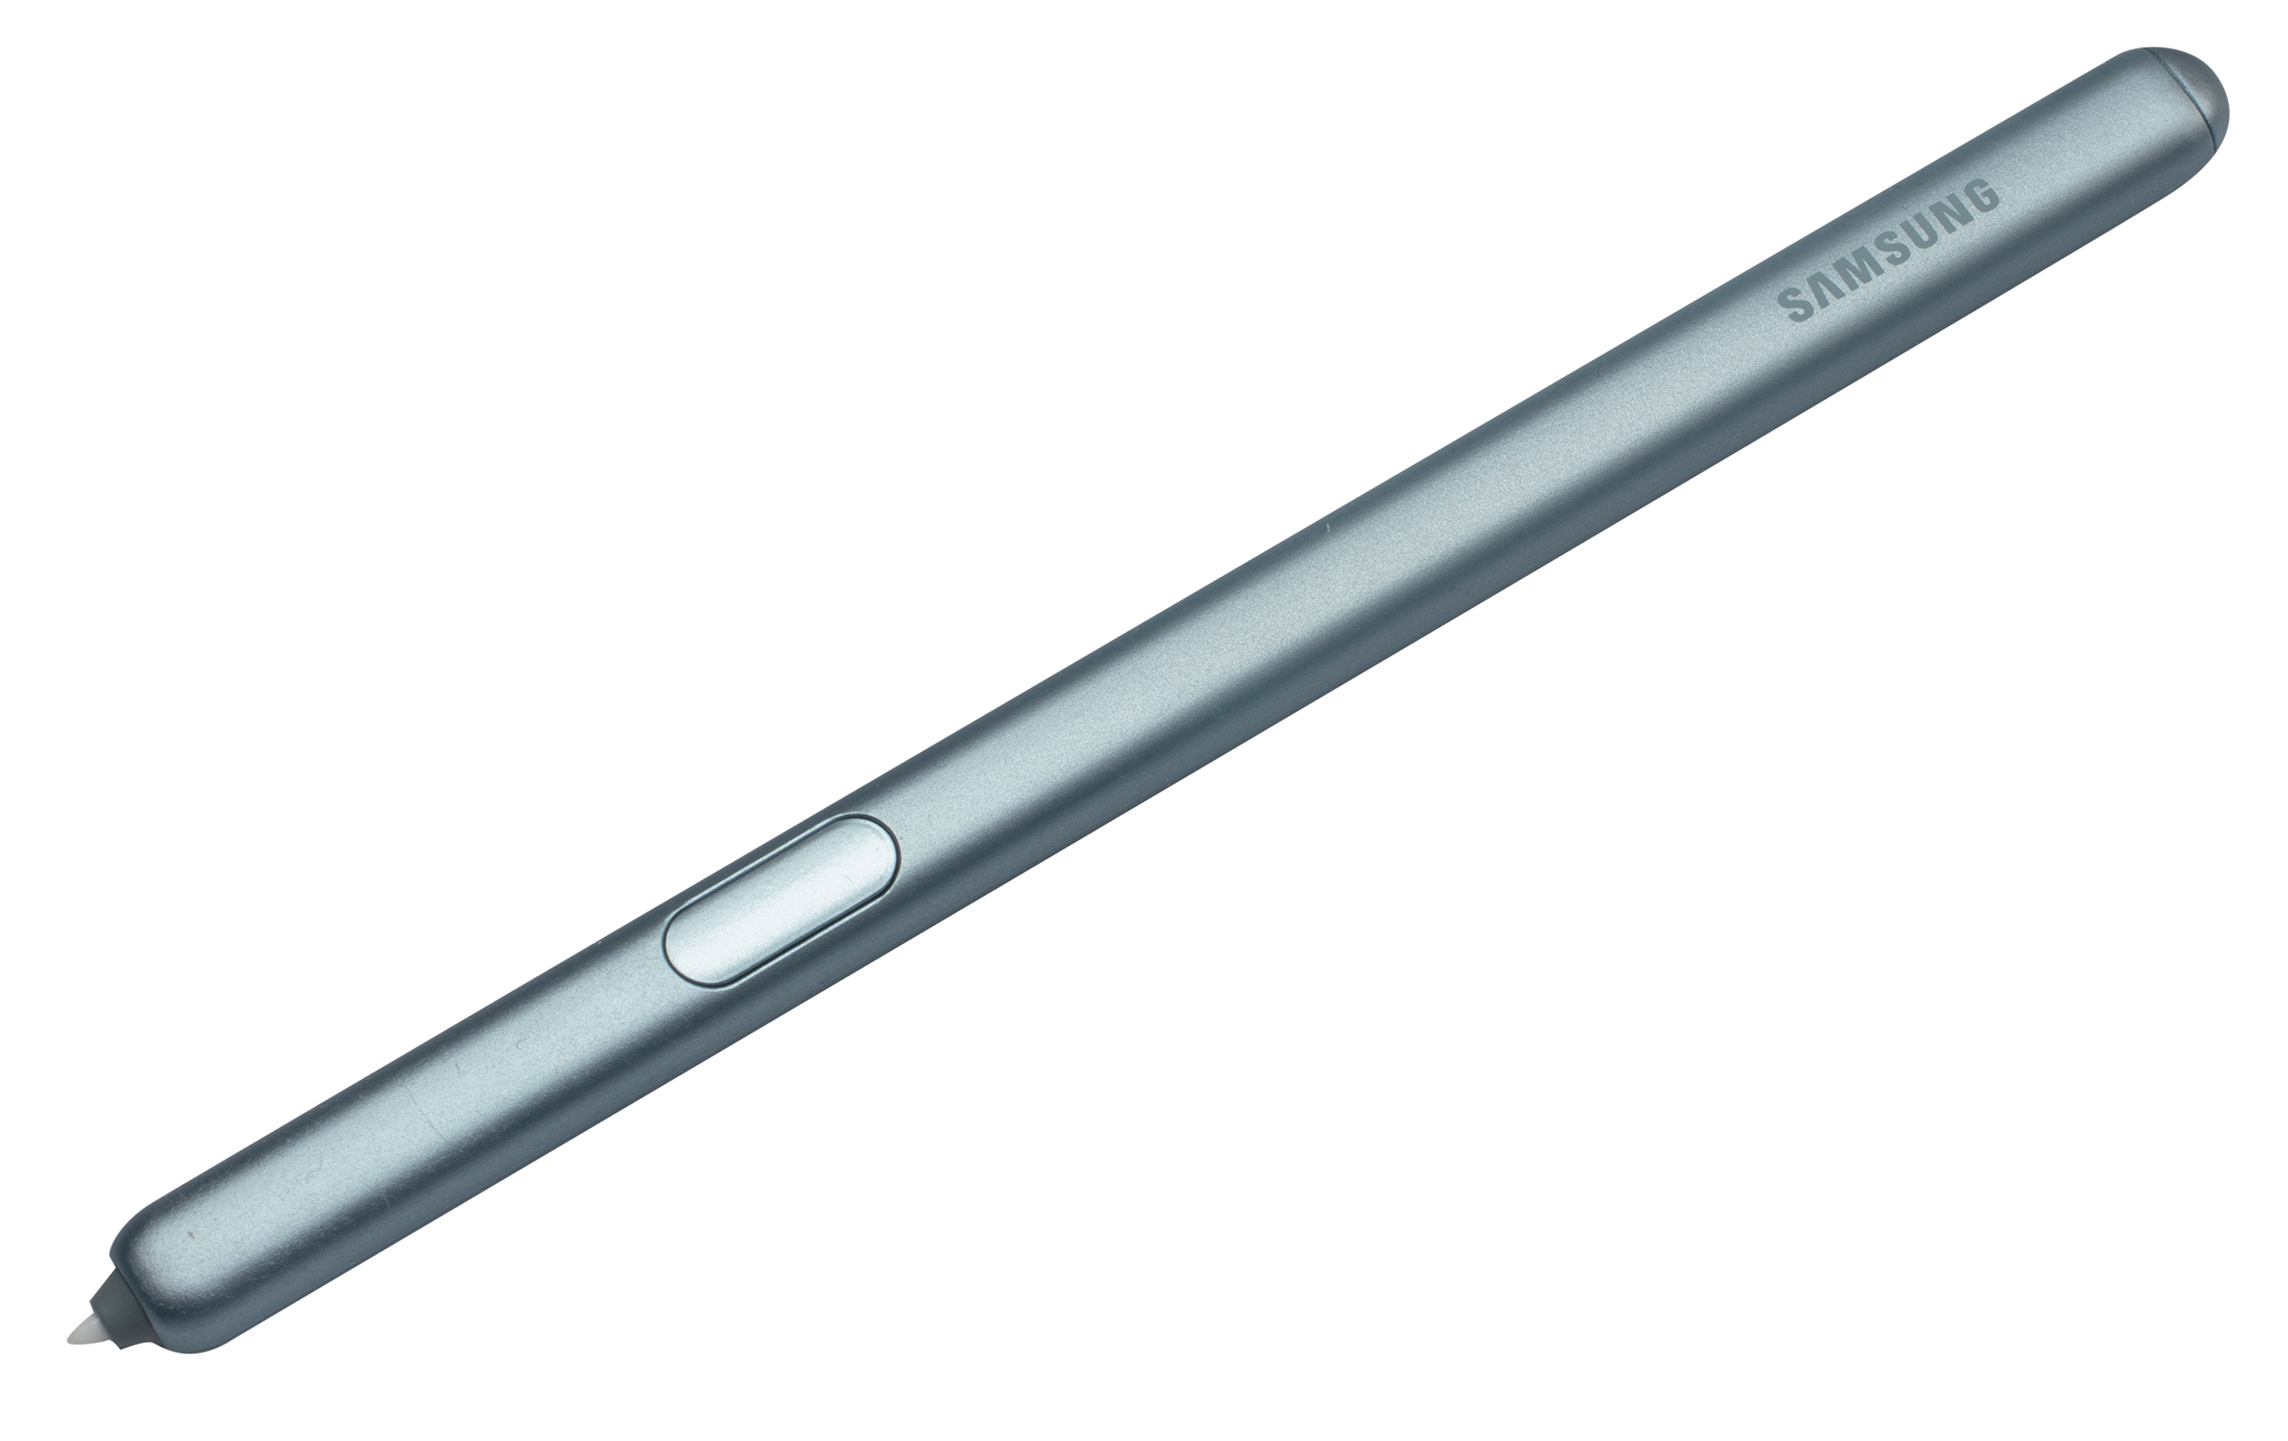 Samsung Galaxy Tab S6 5